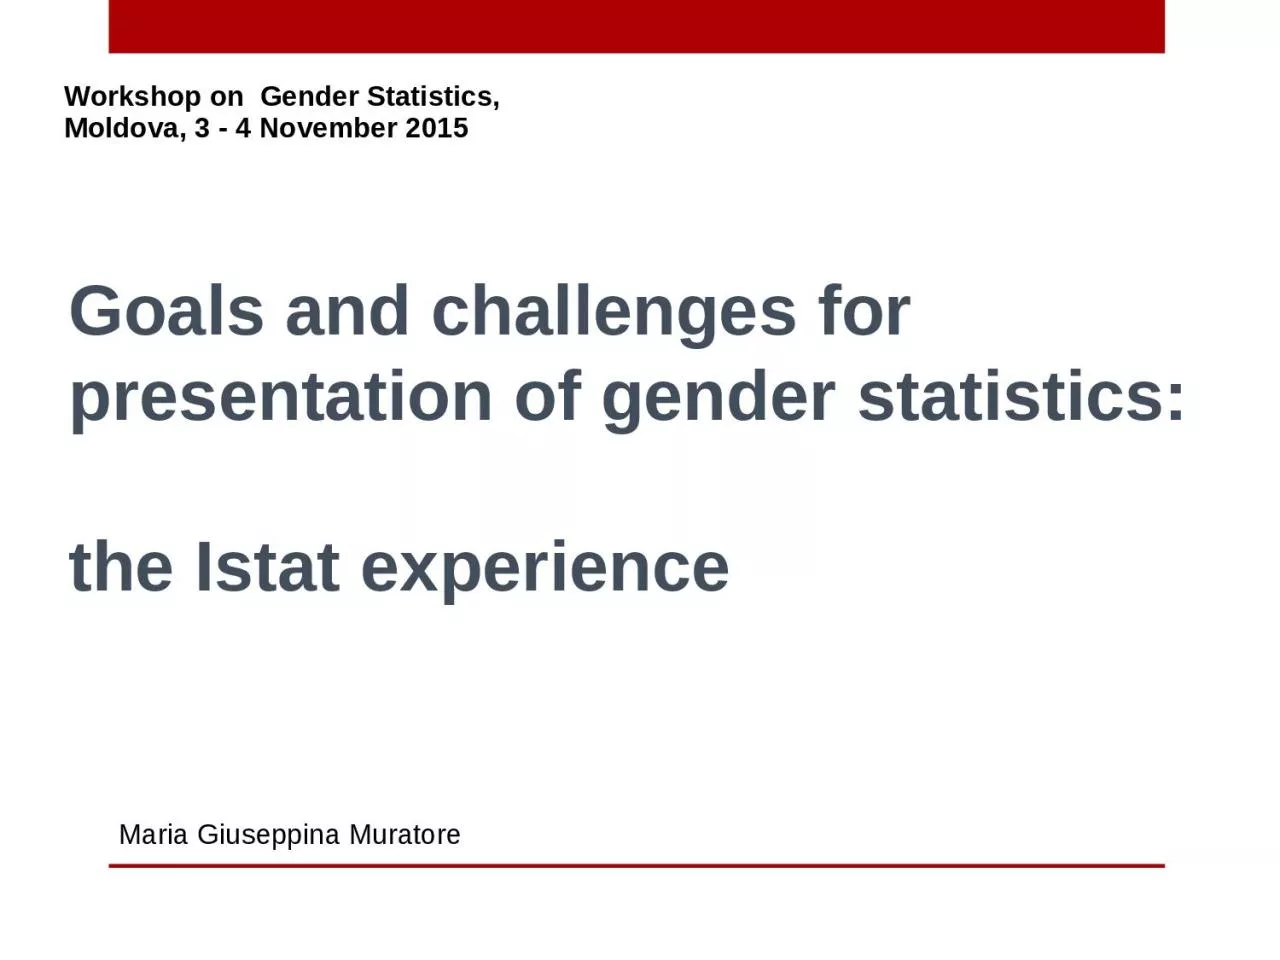 Goals and challenges for presentation of gender statistics: